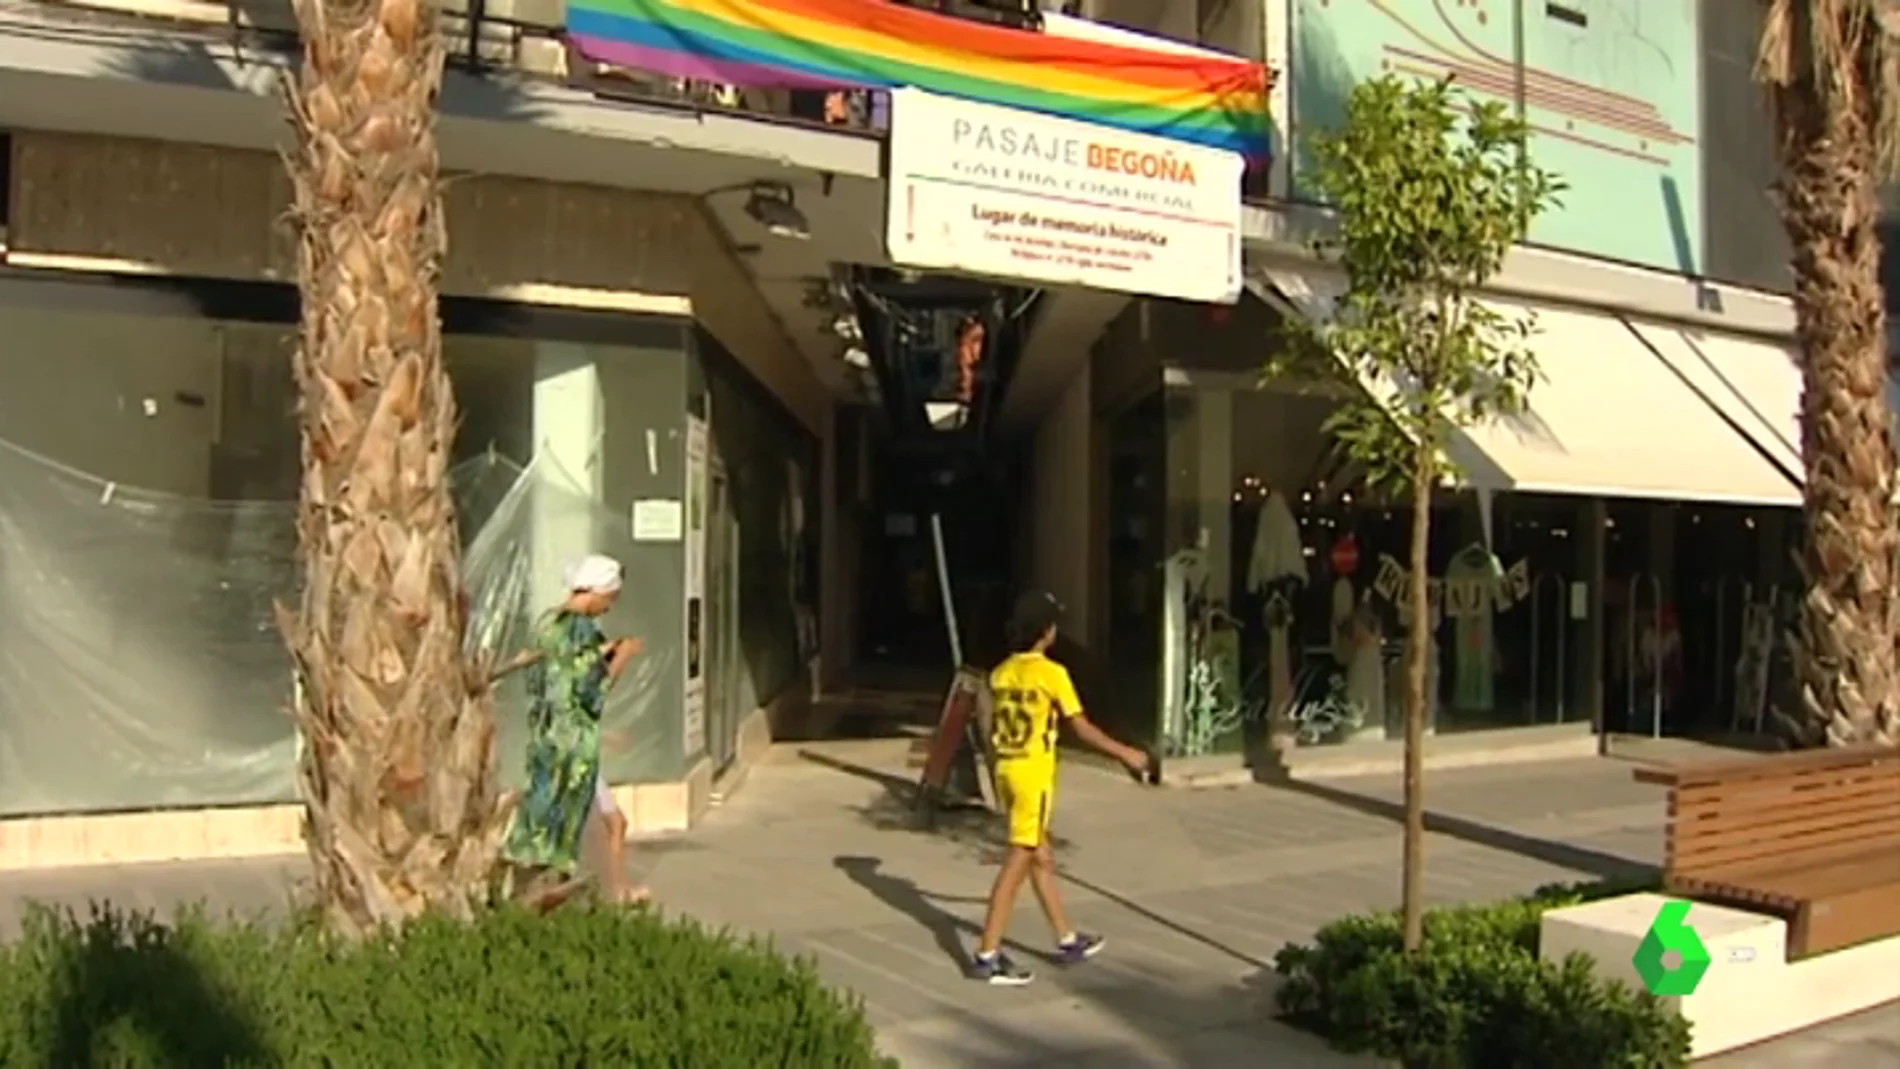 Cruzar a través del Pasaje Begoña de Torremolinos, el 'Stonewall español'